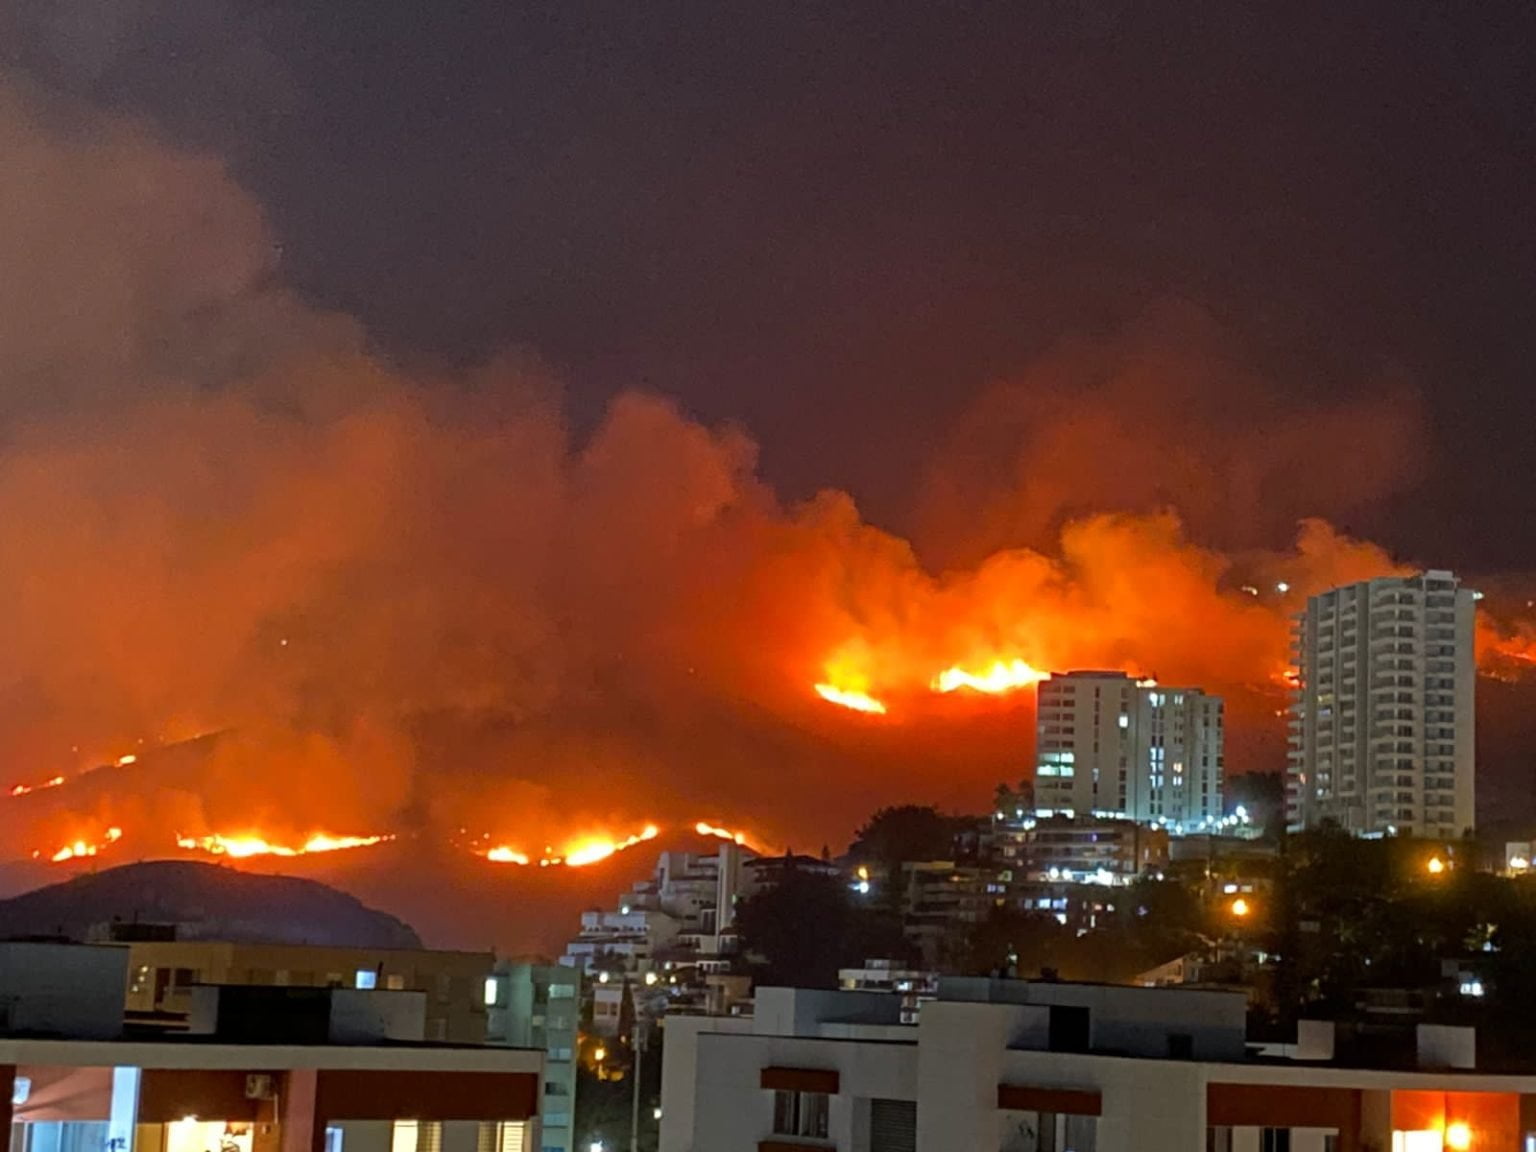 Impactantes imágenes: incendio en Cali a punto de llegar a casas y locales. No lo han podido controlar